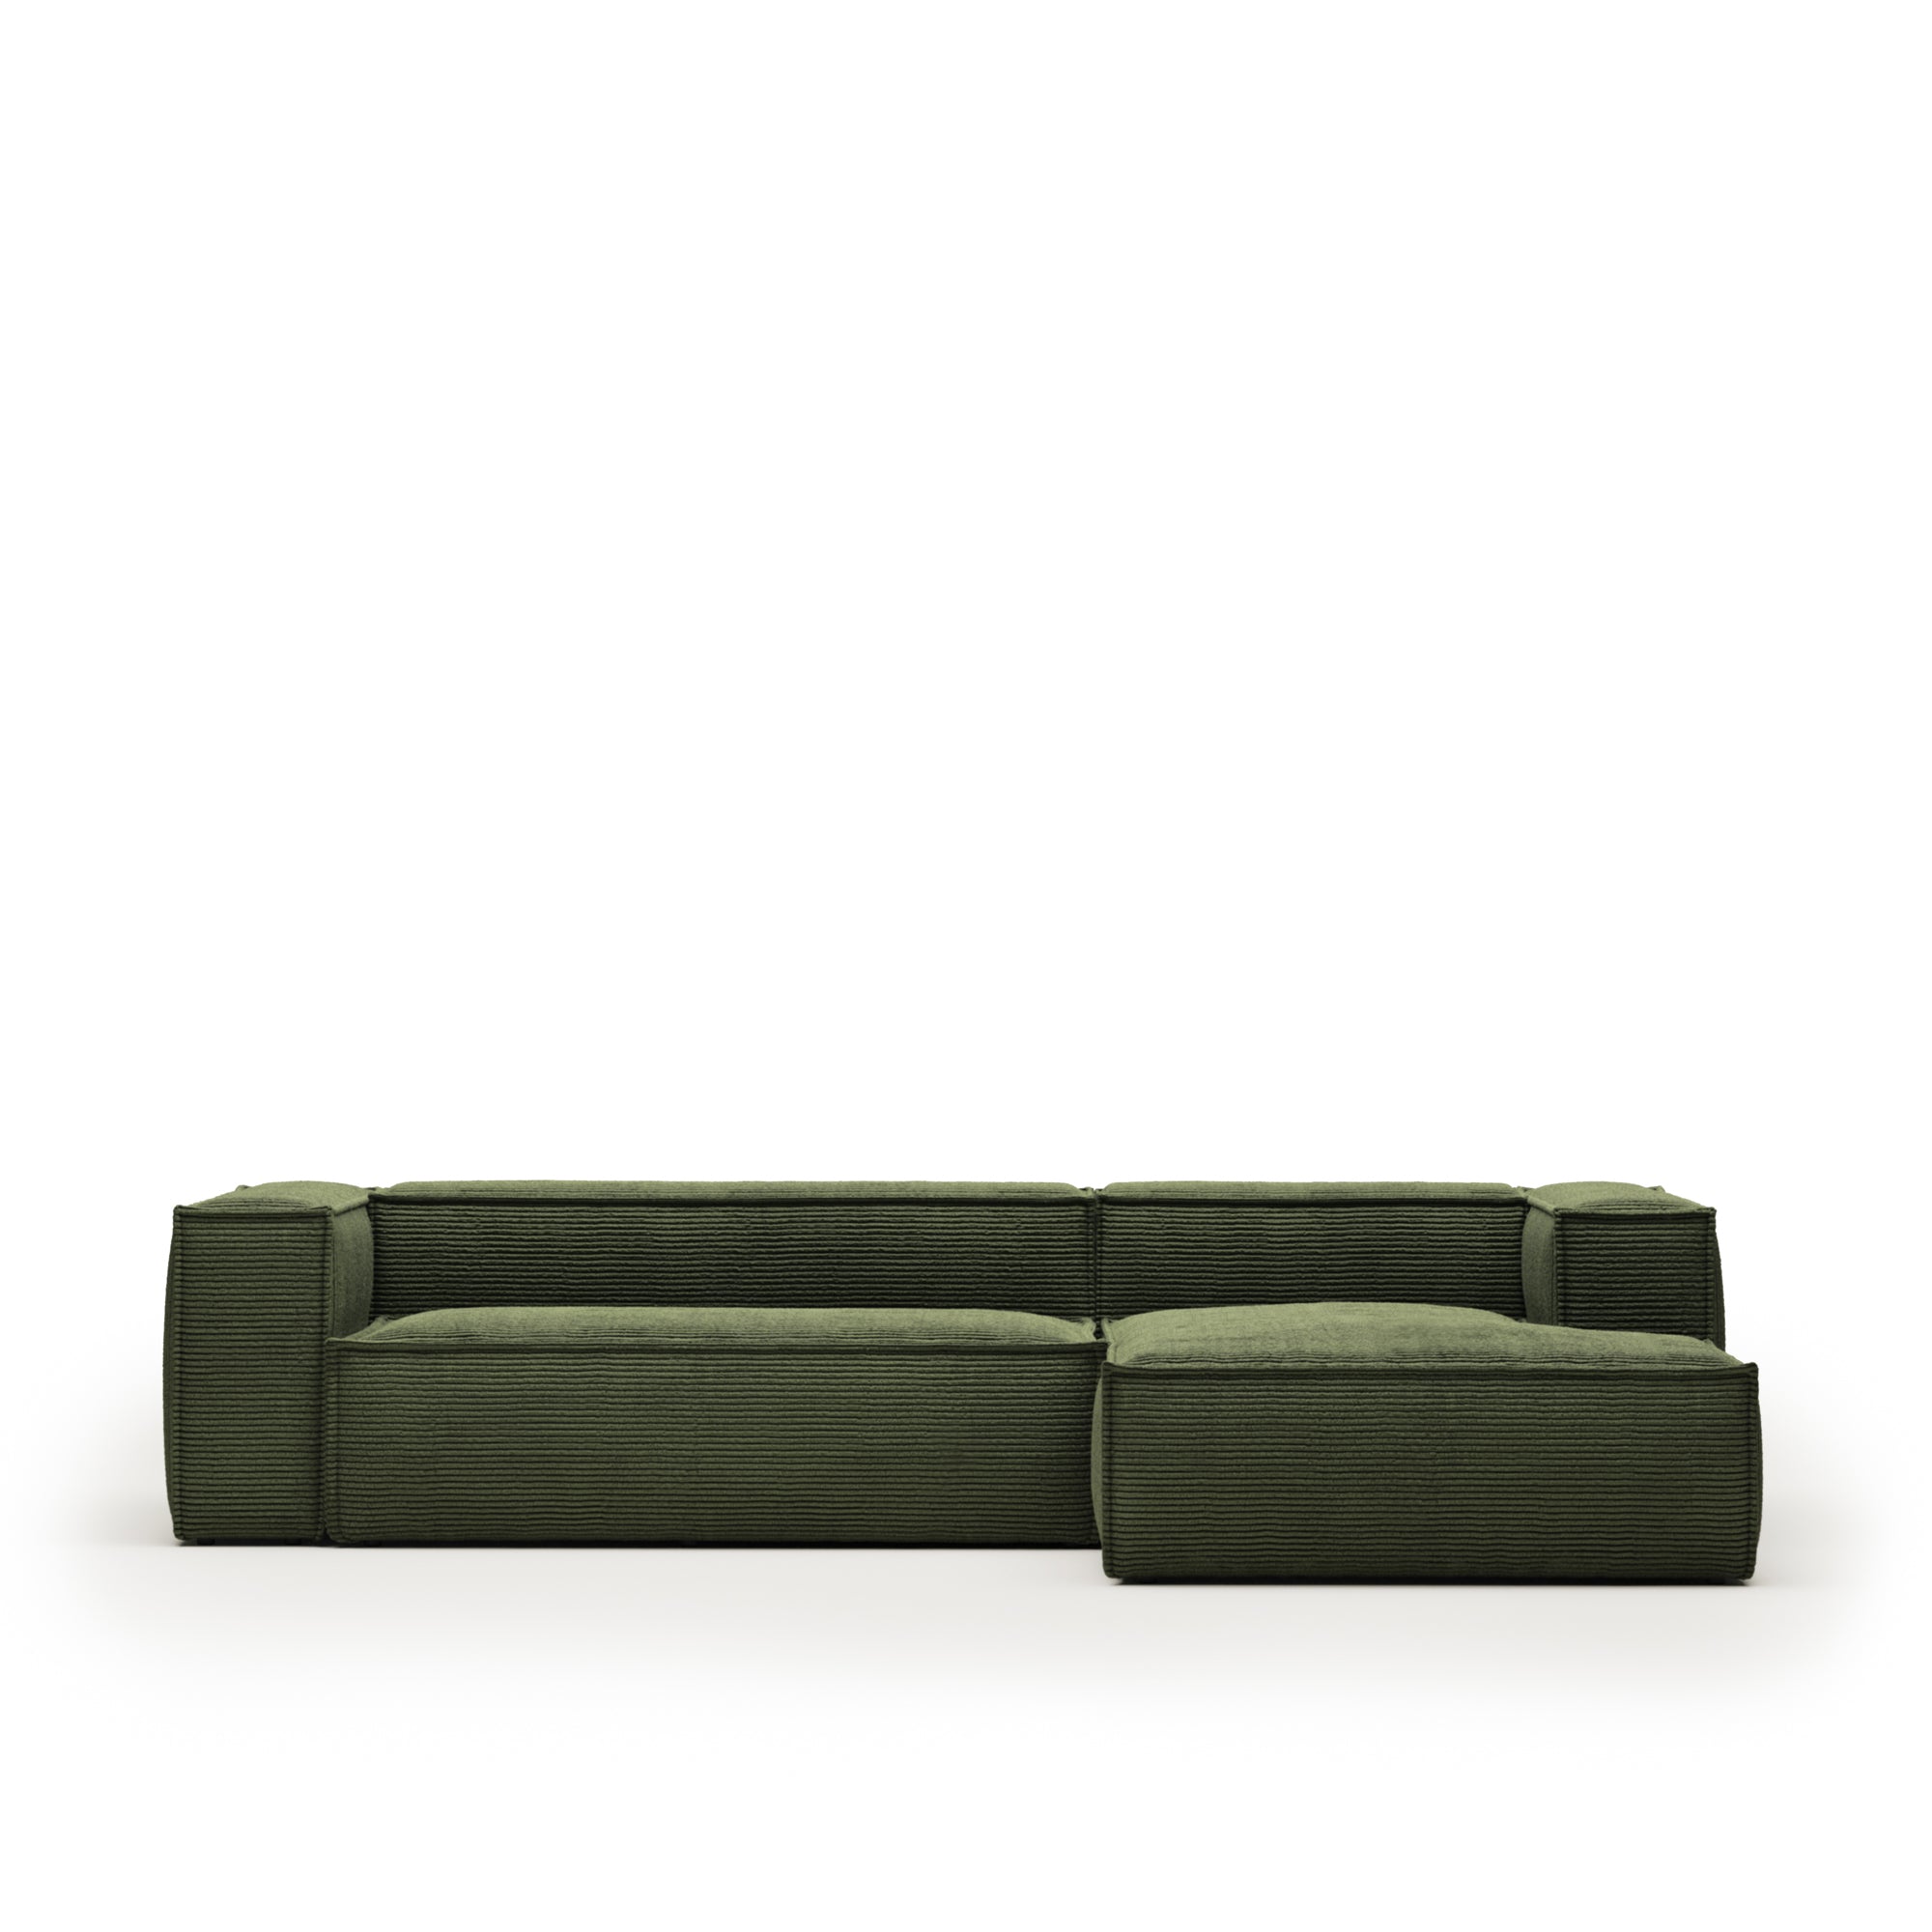 Blok 3 személyes kanapé jobb oldali fekvőfotellel, zöld széles varrású kordbársonyból, 300 cm